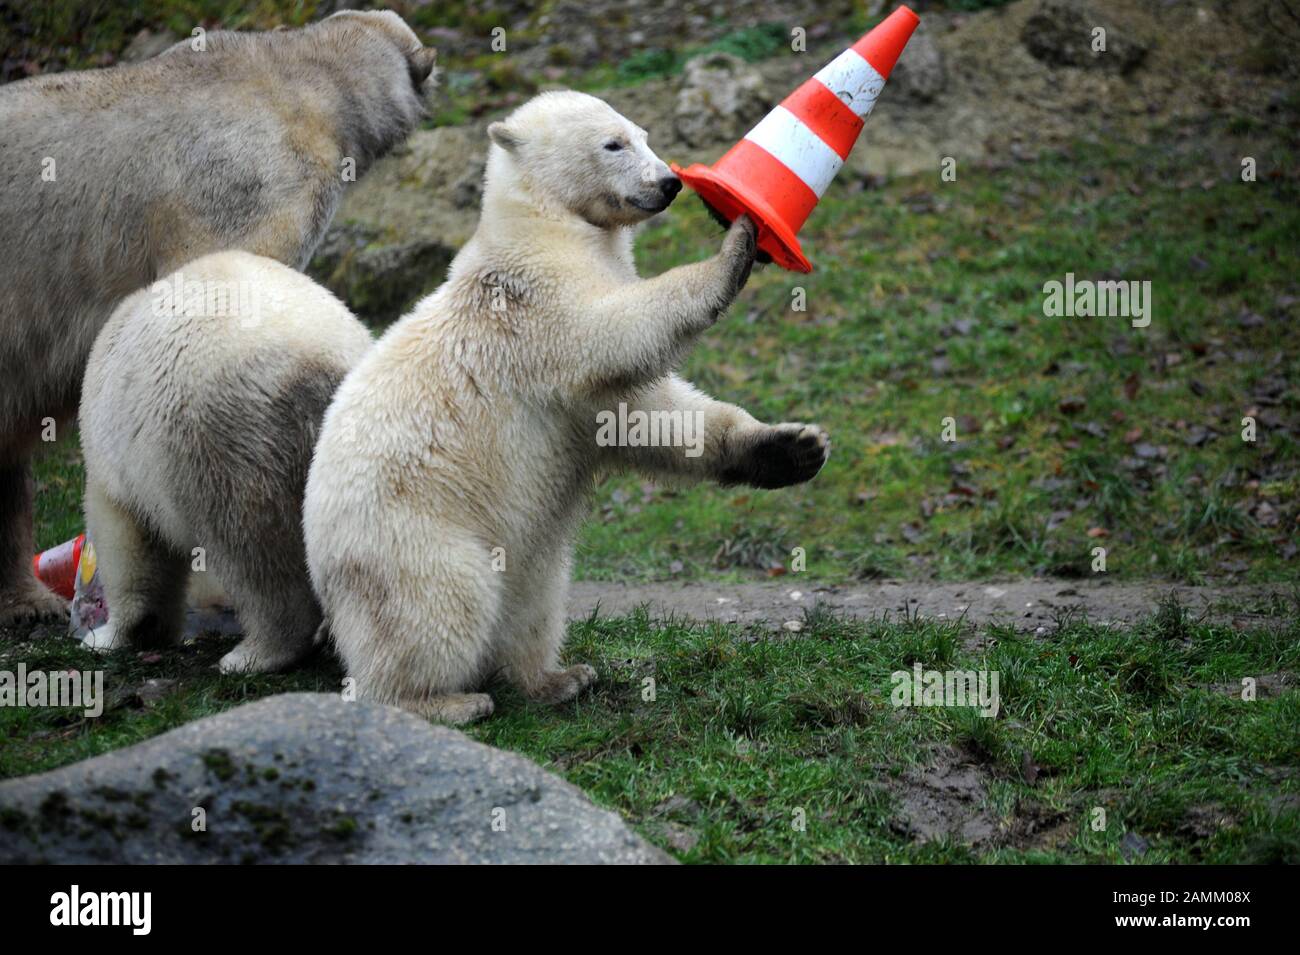 Les jeunes jumeaux ours polaires Nela et Nobby célèbrent leur premier anniversaire avec la mère Giovanna dans le zoo Hellabronn. L'image montre les animaux qui mangent le gâteau d'anniversaire et jouent avec des chapeaux de rue. [traduction automatique] Banque D'Images